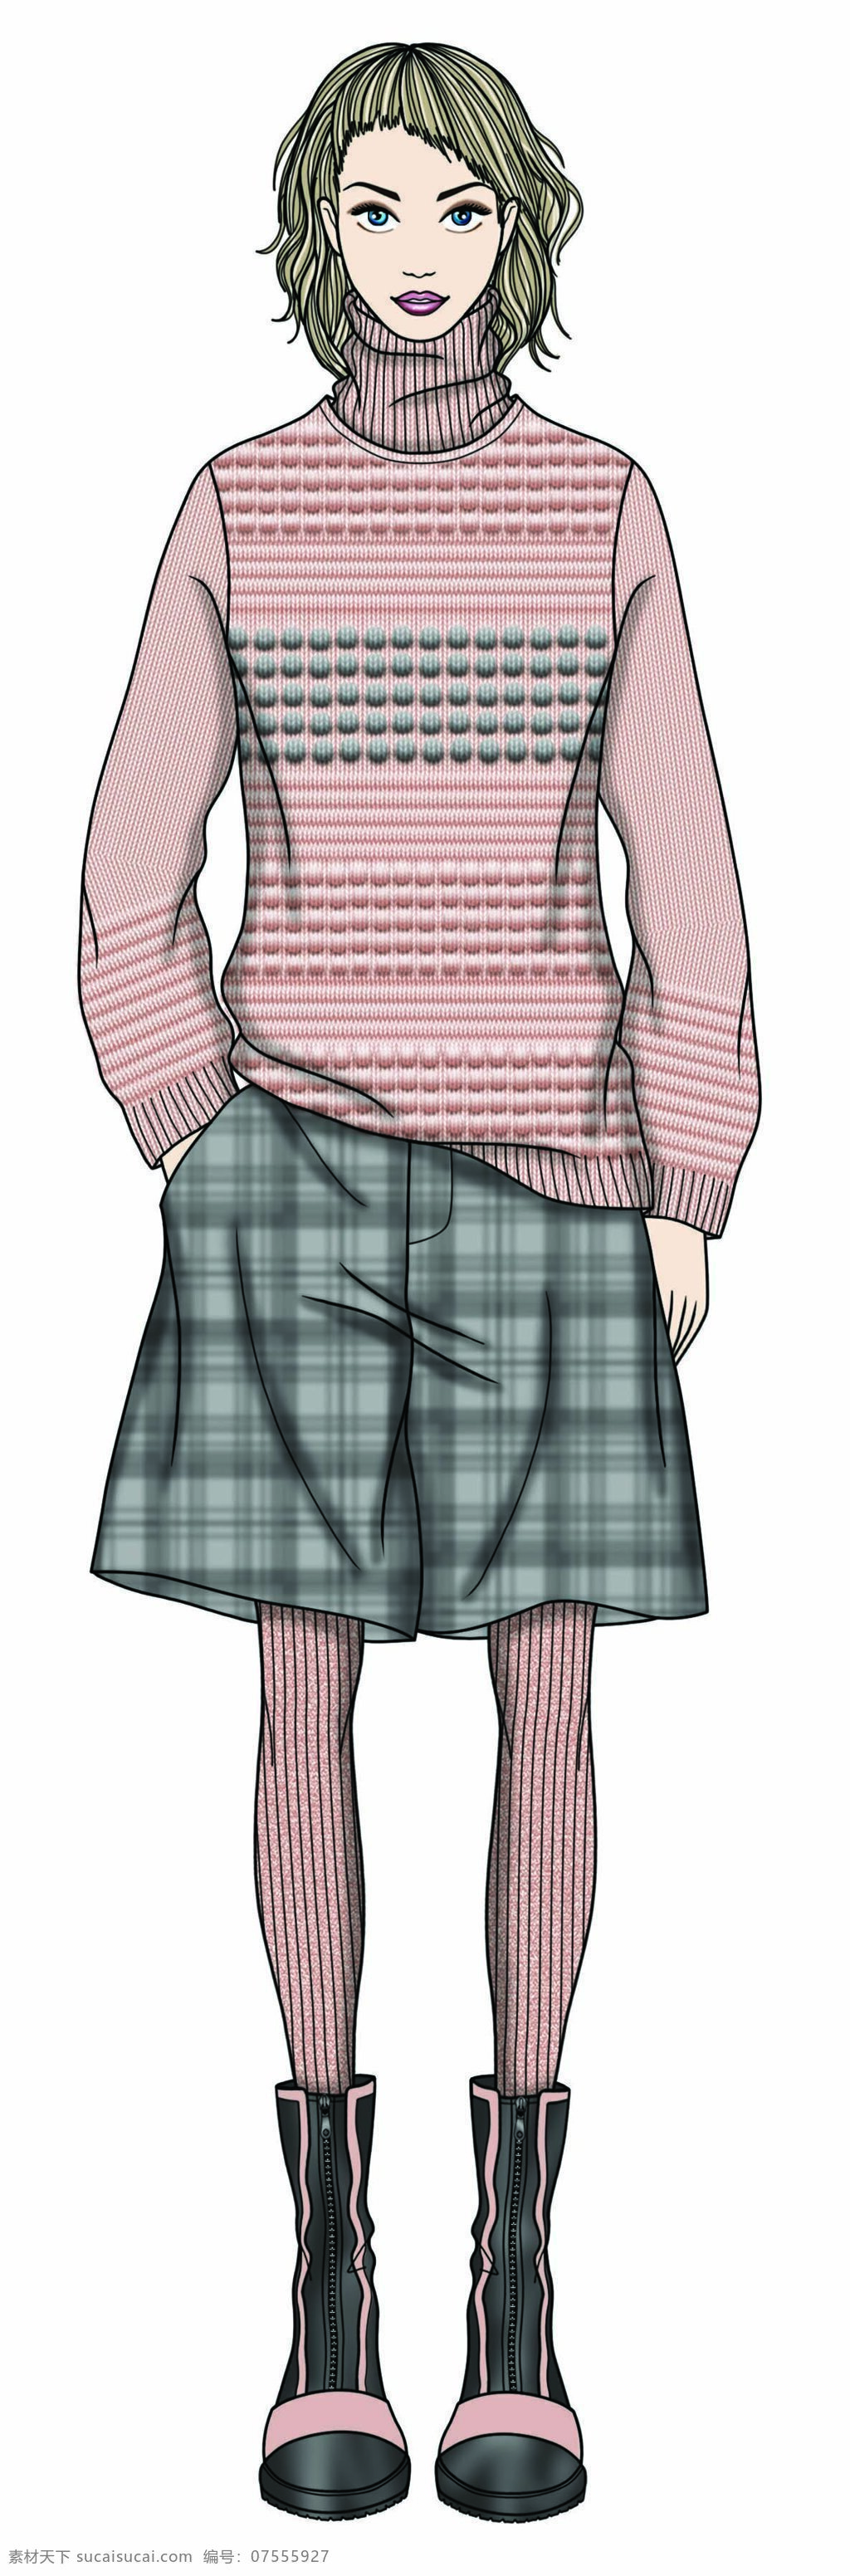 温婉 帅气 粉色 毛衣 女装 服装 效果图 粉色毛衣 服装效果图 裤子 上衣 条纹打底裤